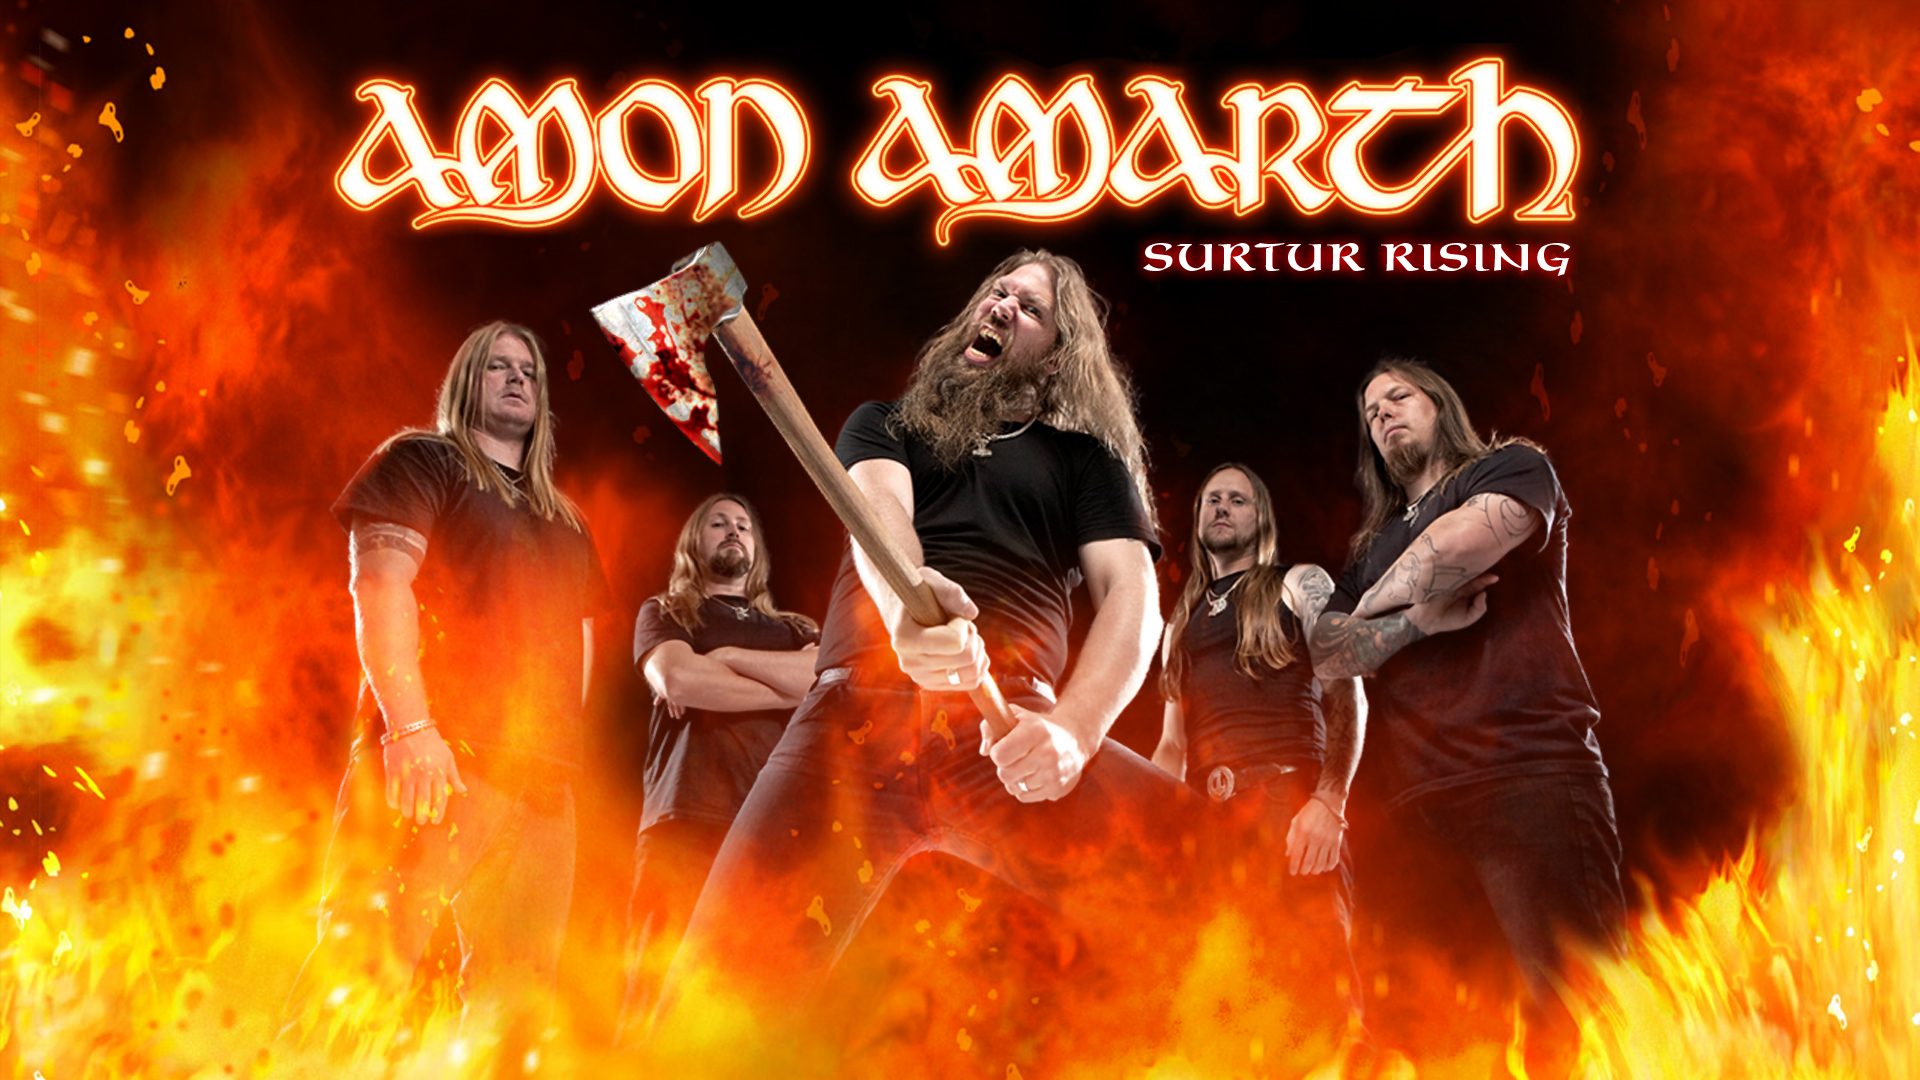 Amon Amarth - Surtur Rising by KronicX on DeviantArt